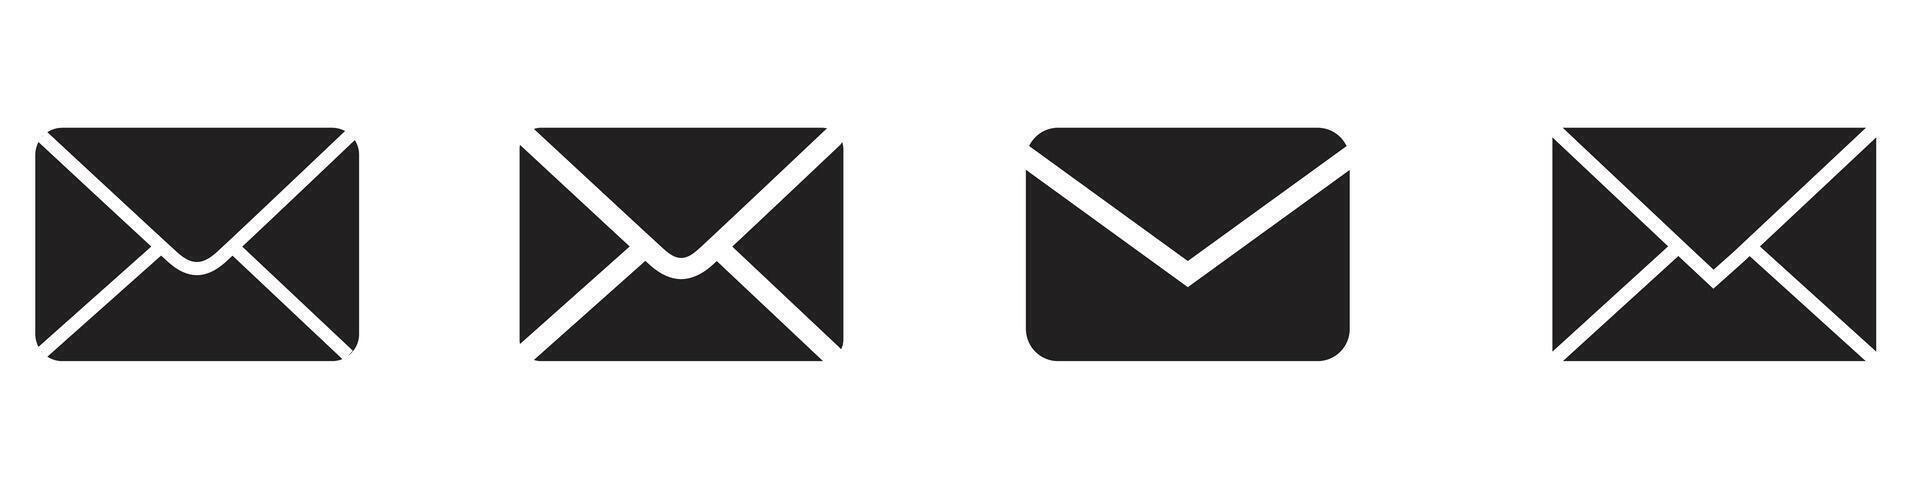 uppsättning post, meddelande, inkorg ikon platt isolerat på vit bakgrund vektor